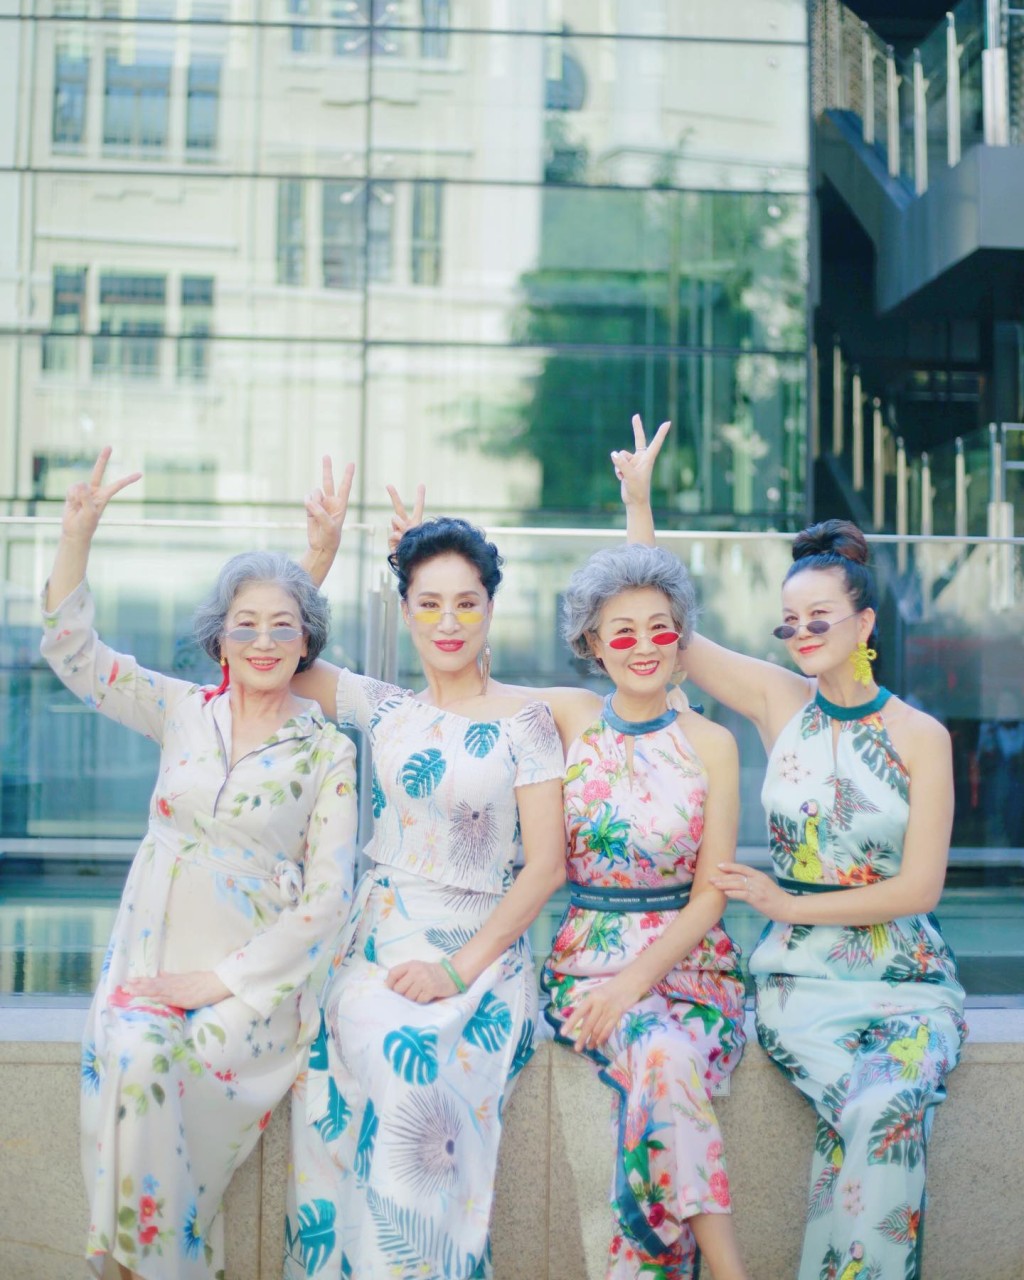  「时尚奶奶团」创立多时，由一班超过50岁的中年至老年妇女组成。 ​  ​